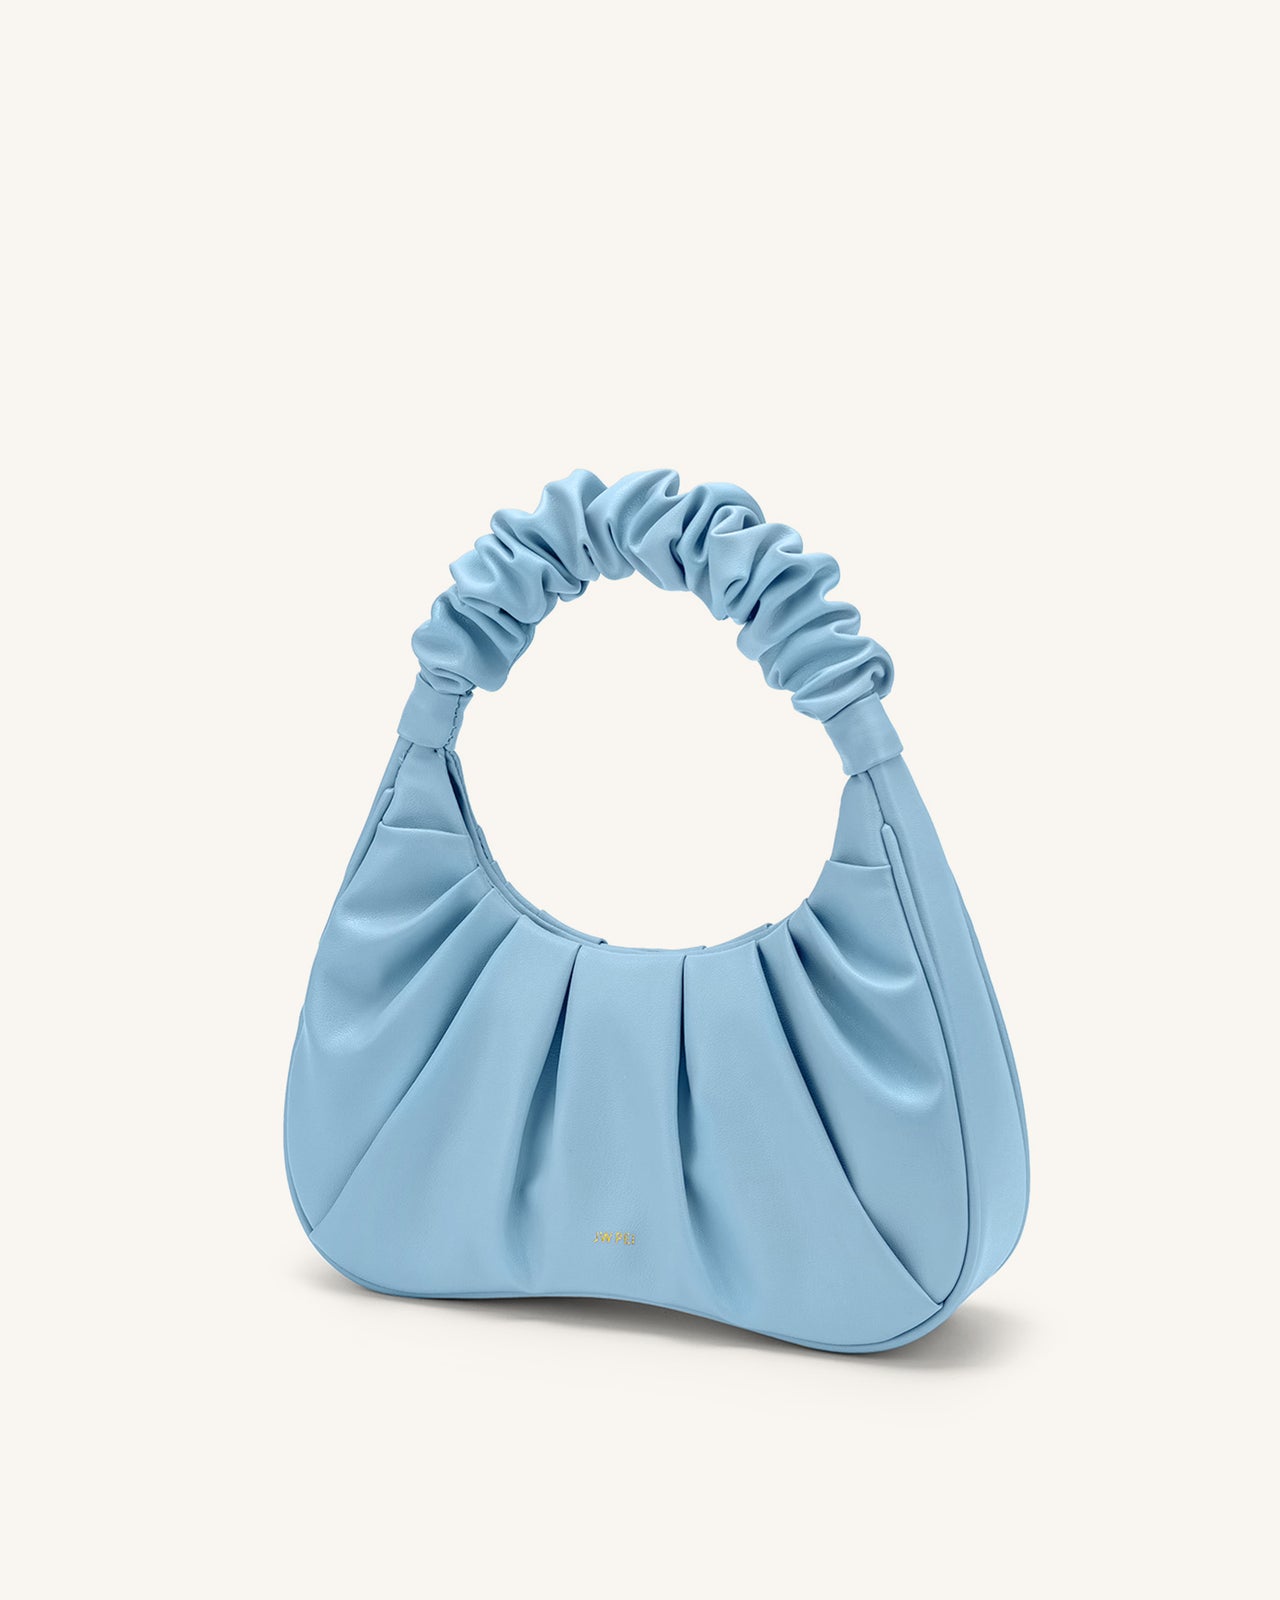 Fashion Shoulder Bag - Ice Croc - JW PEI Official Shop